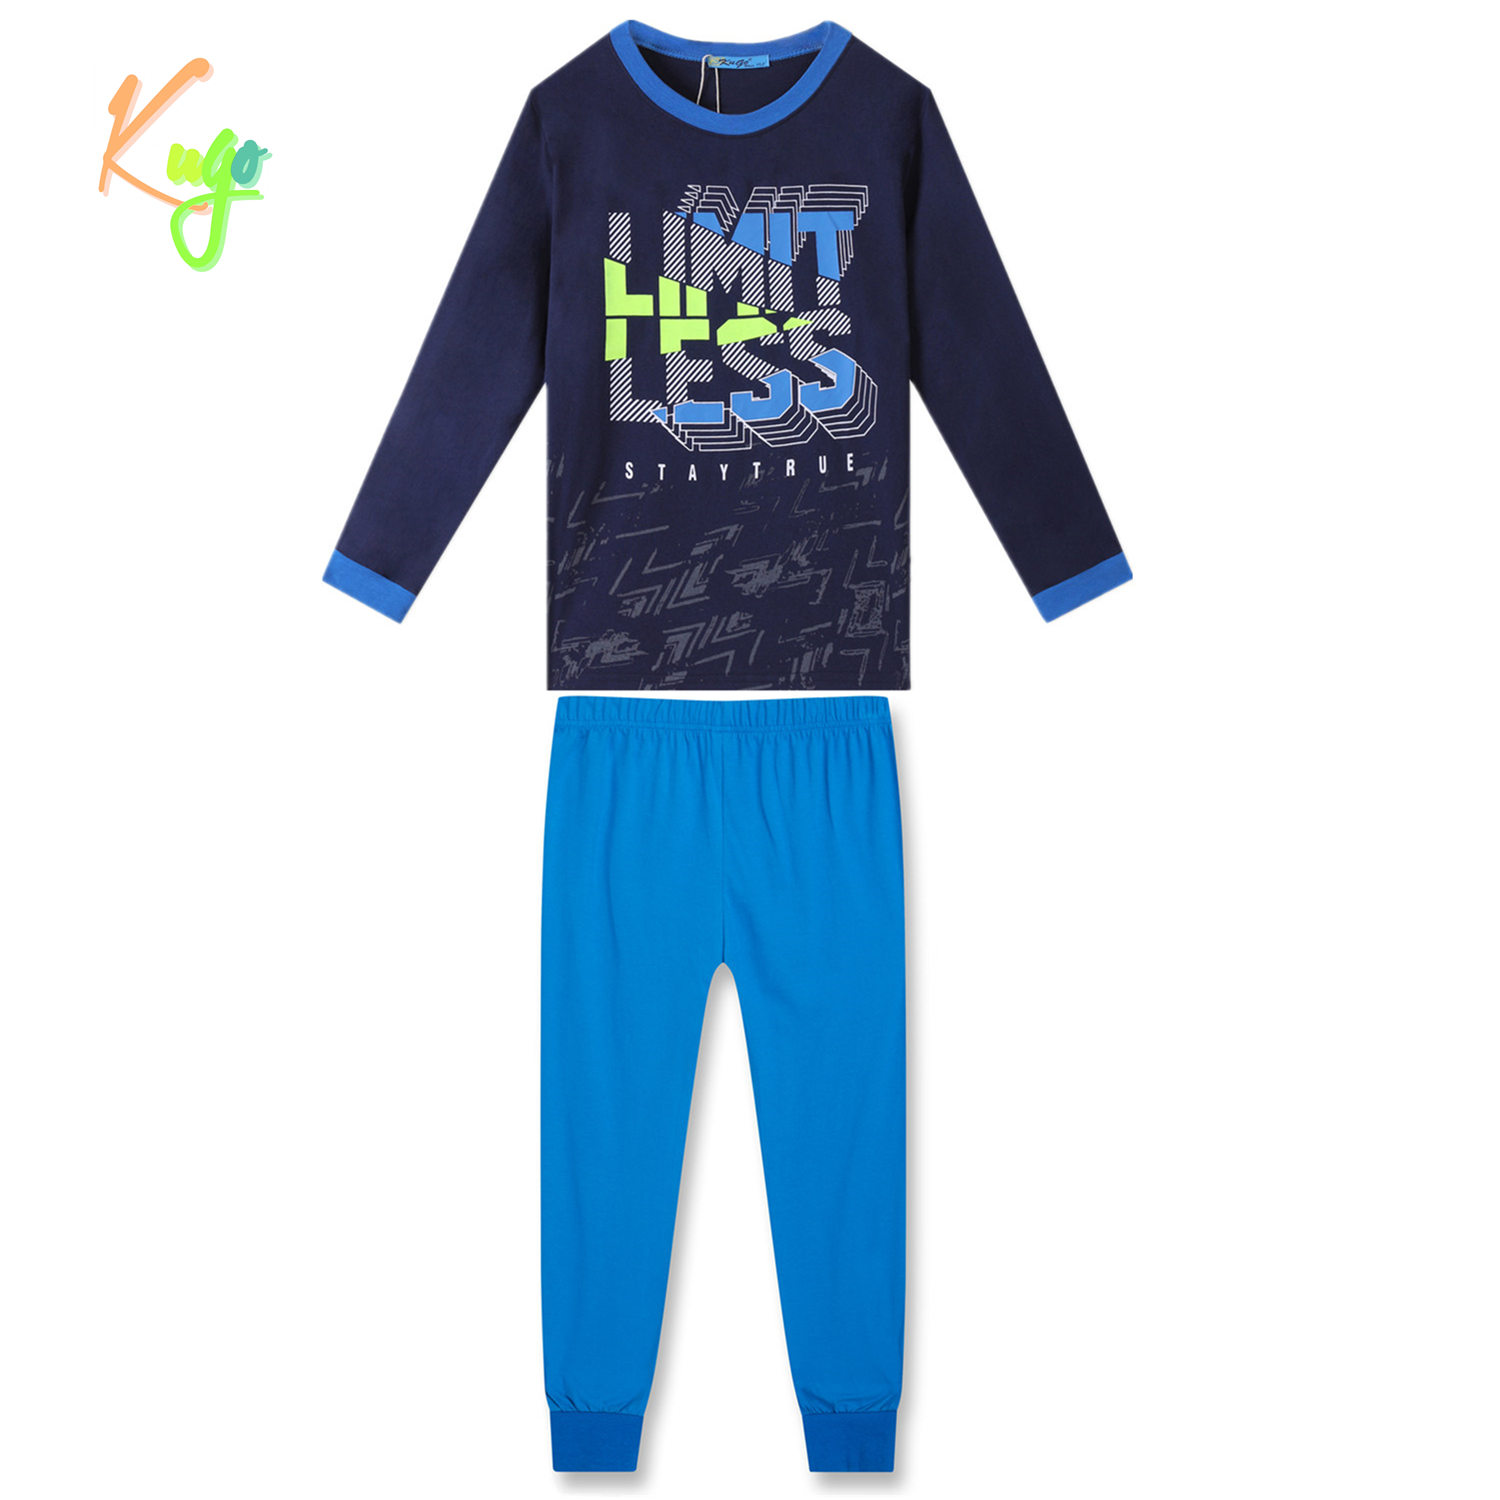 Chlapecké pyžamo - KUGO MP3783, tmavě modrá Barva: Modrá tmavě, Velikost: 134